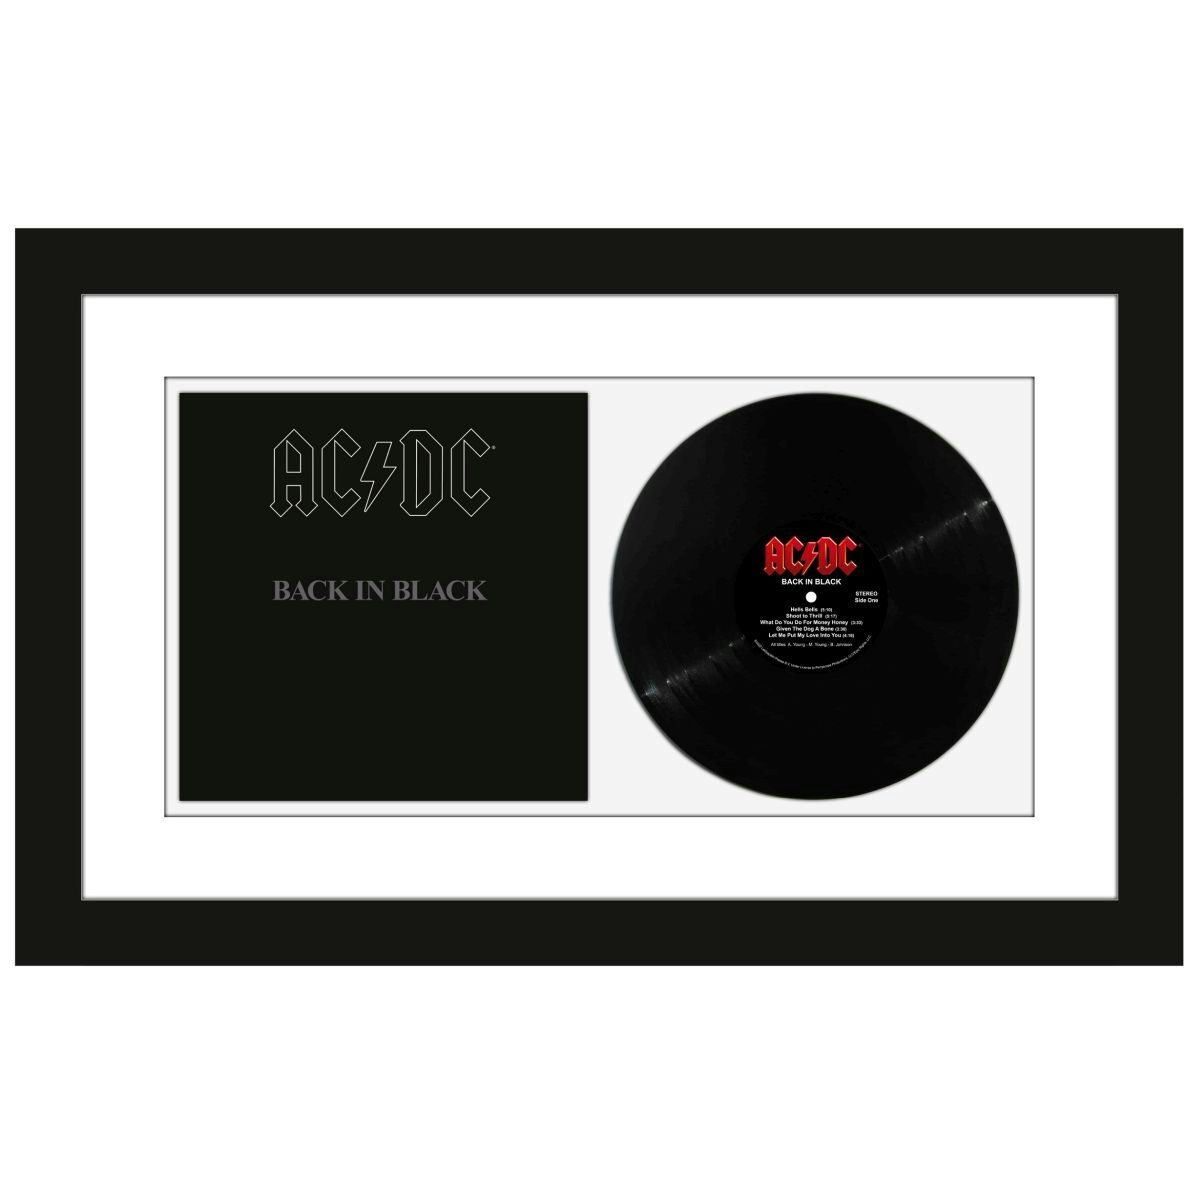 最も完璧な AC/DC「バック・イン・ブラック」 レコード